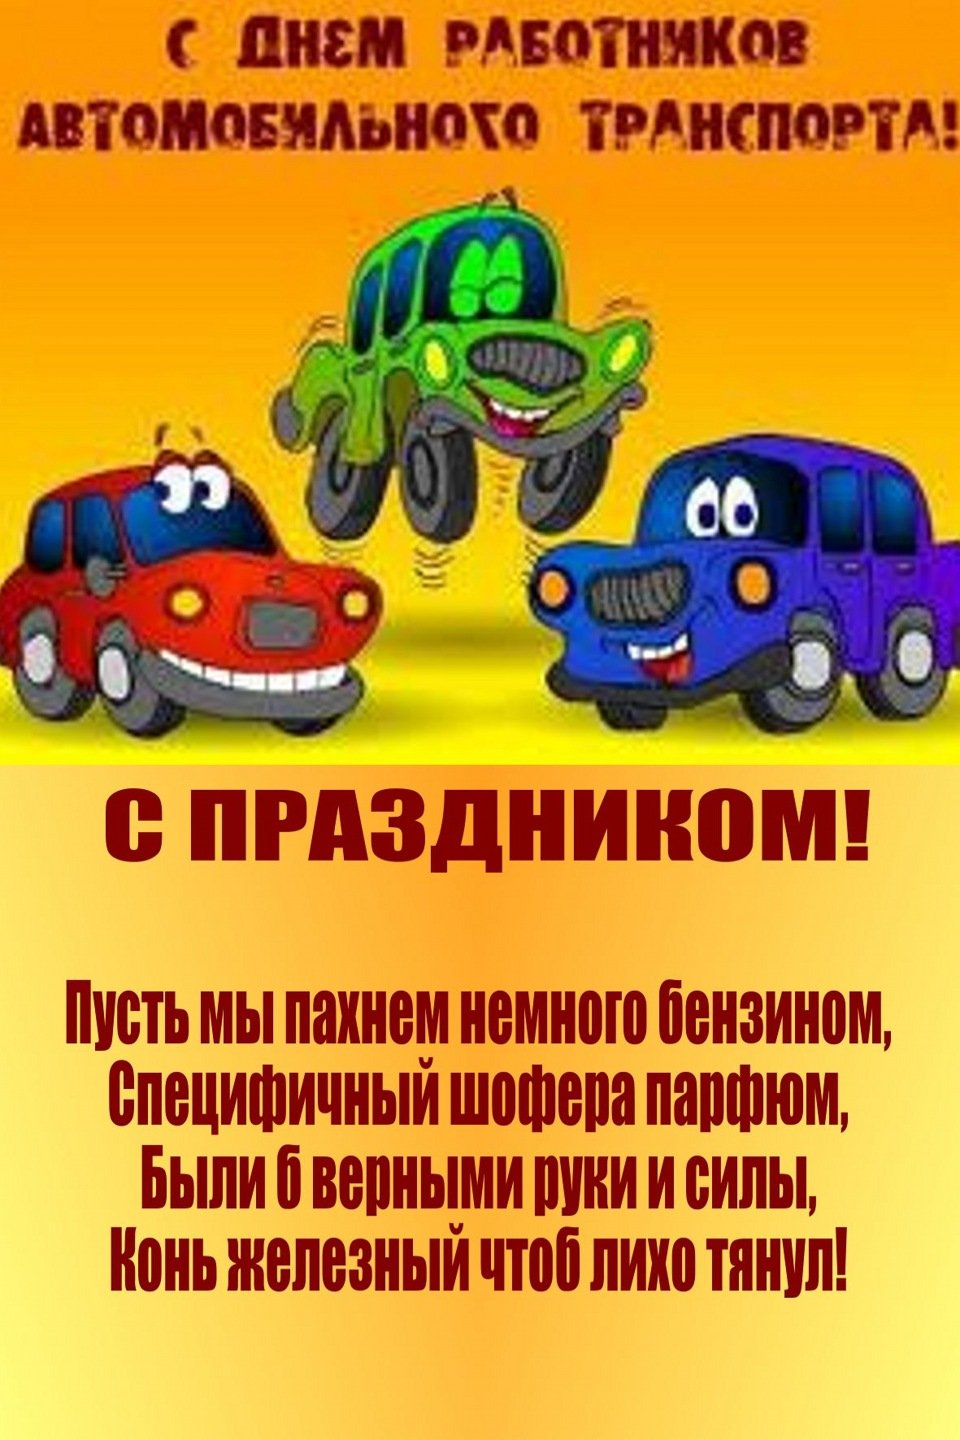 Картинка с днем автомобилиста водителю автобуса - скачать бесплатно на сайте malino-v.ru